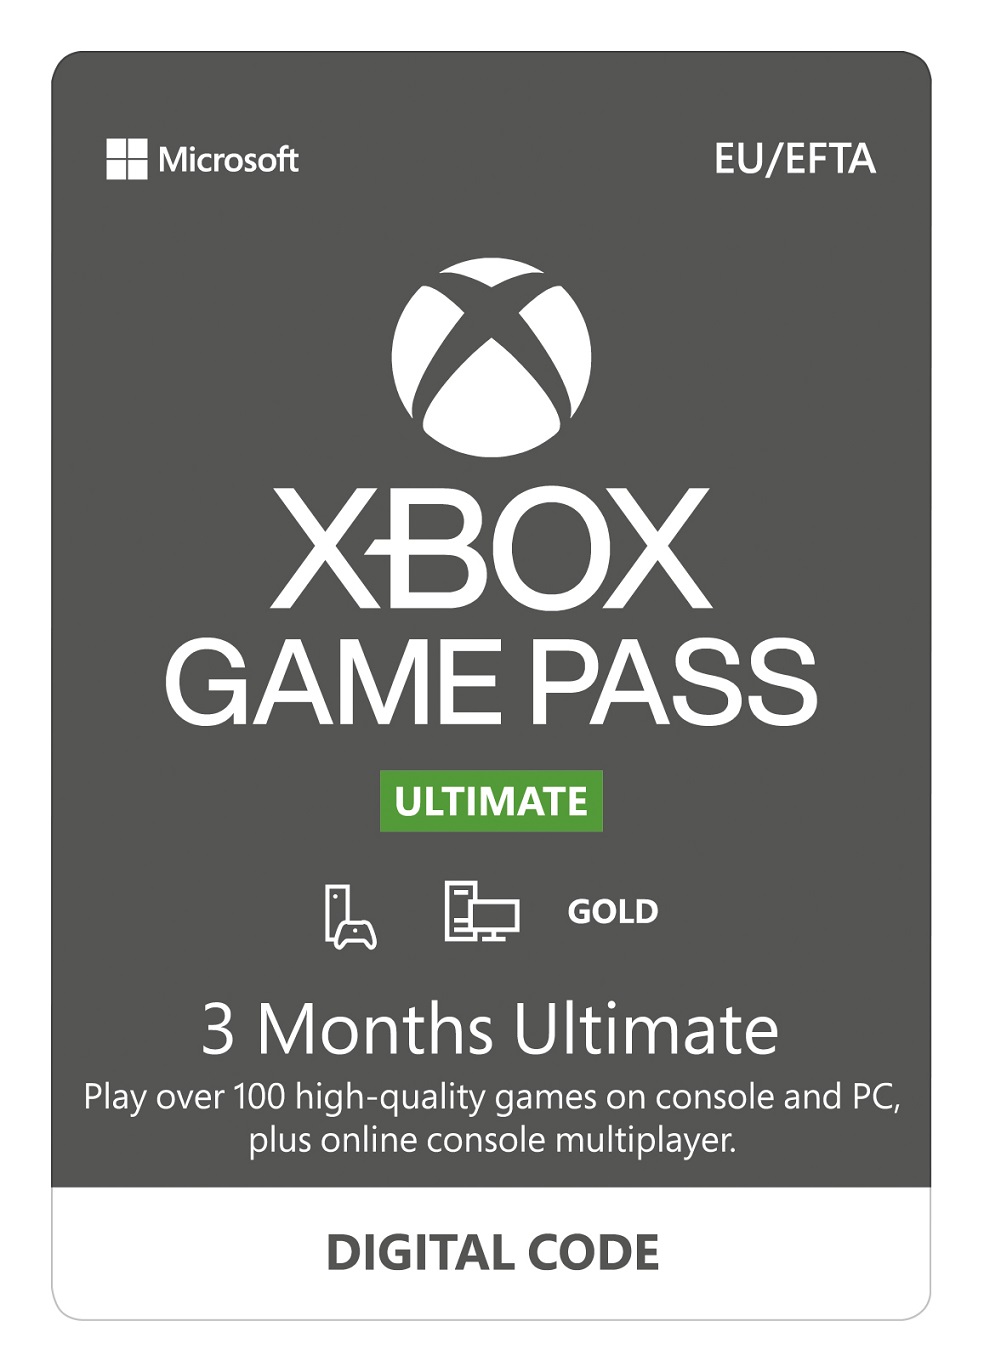 Xbox Ultimate Game Pass 3 měsíční předplatné